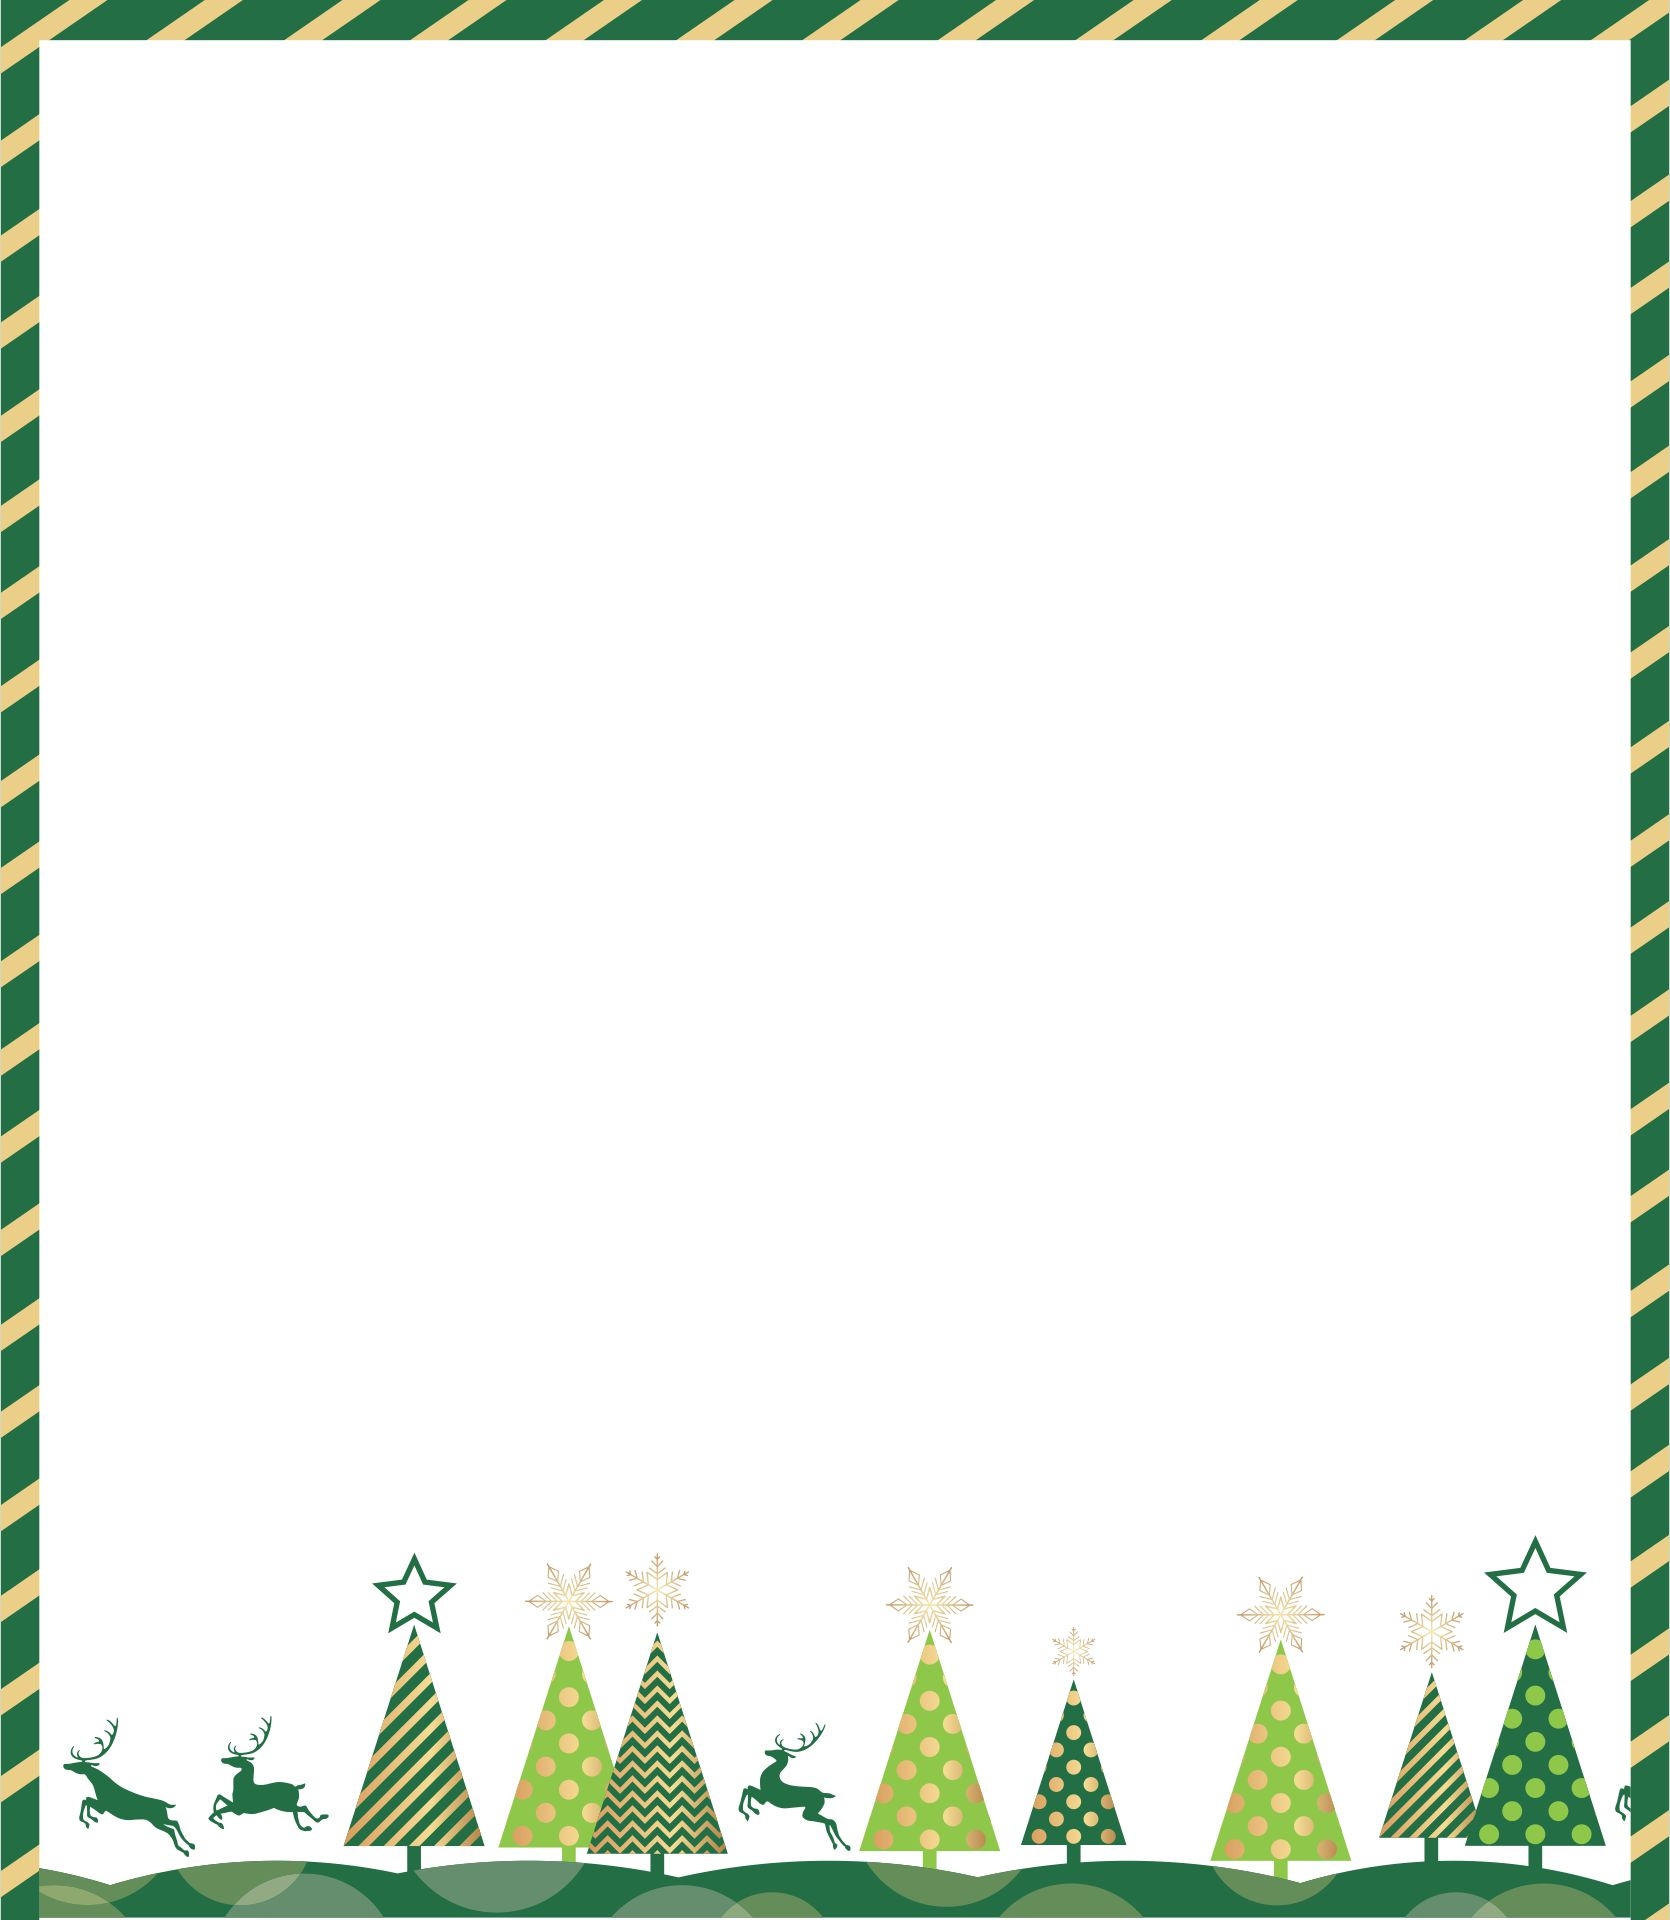 Christmas Borders Free Printable - Free Printable Templates